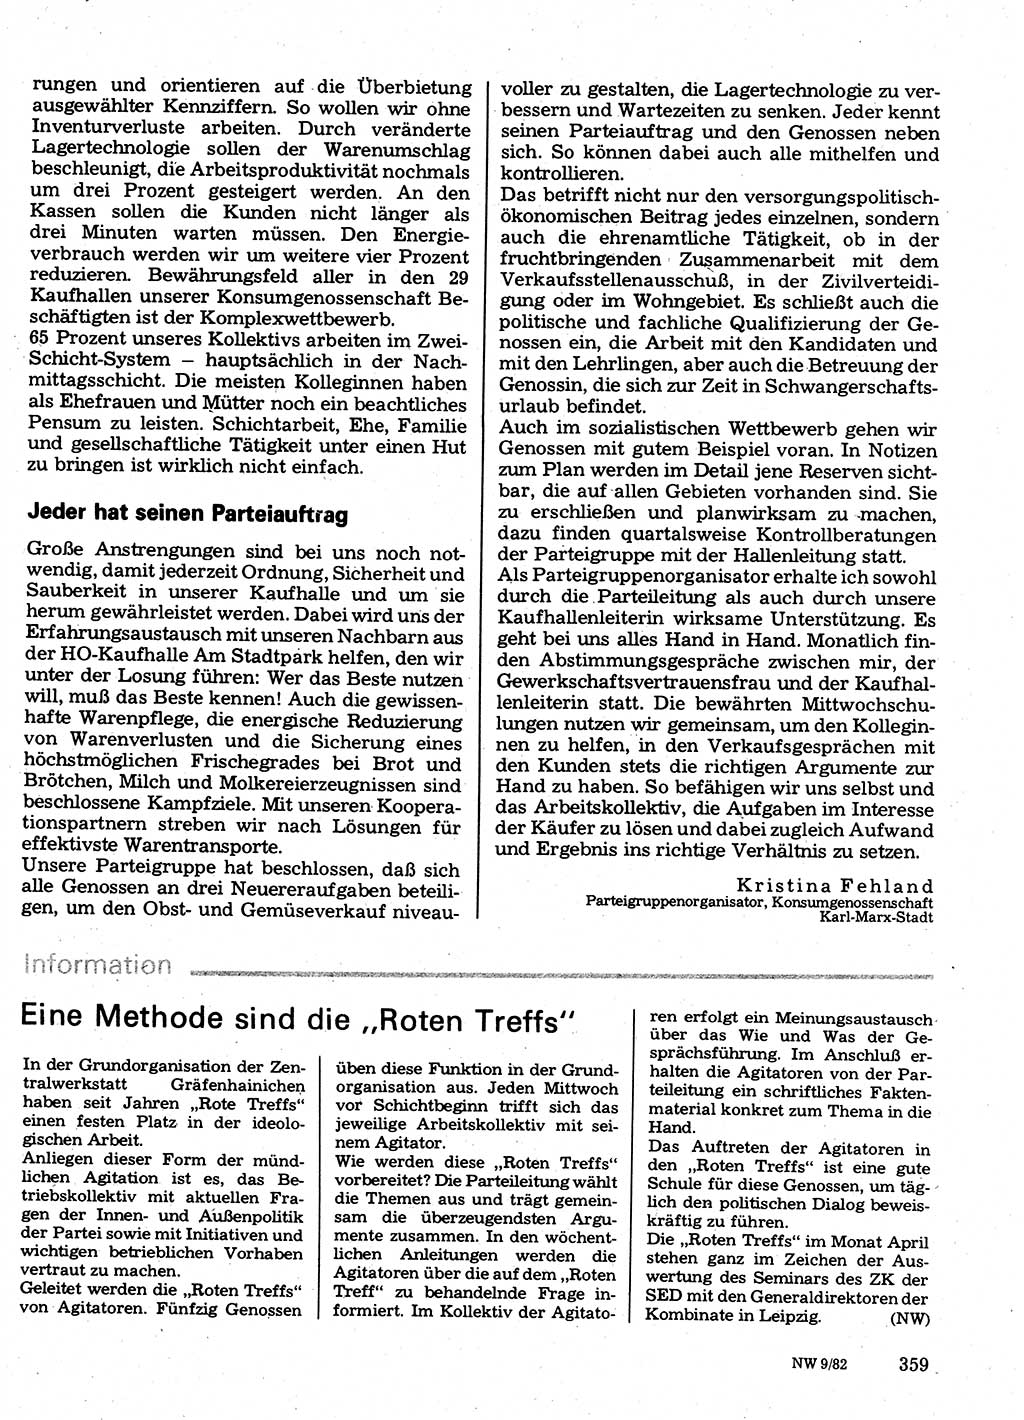 Neuer Weg (NW), Organ des Zentralkomitees (ZK) der SED (Sozialistische Einheitspartei Deutschlands) für Fragen des Parteilebens, 37. Jahrgang [Deutsche Demokratische Republik (DDR)] 1982, Seite 359 (NW ZK SED DDR 1982, S. 359)